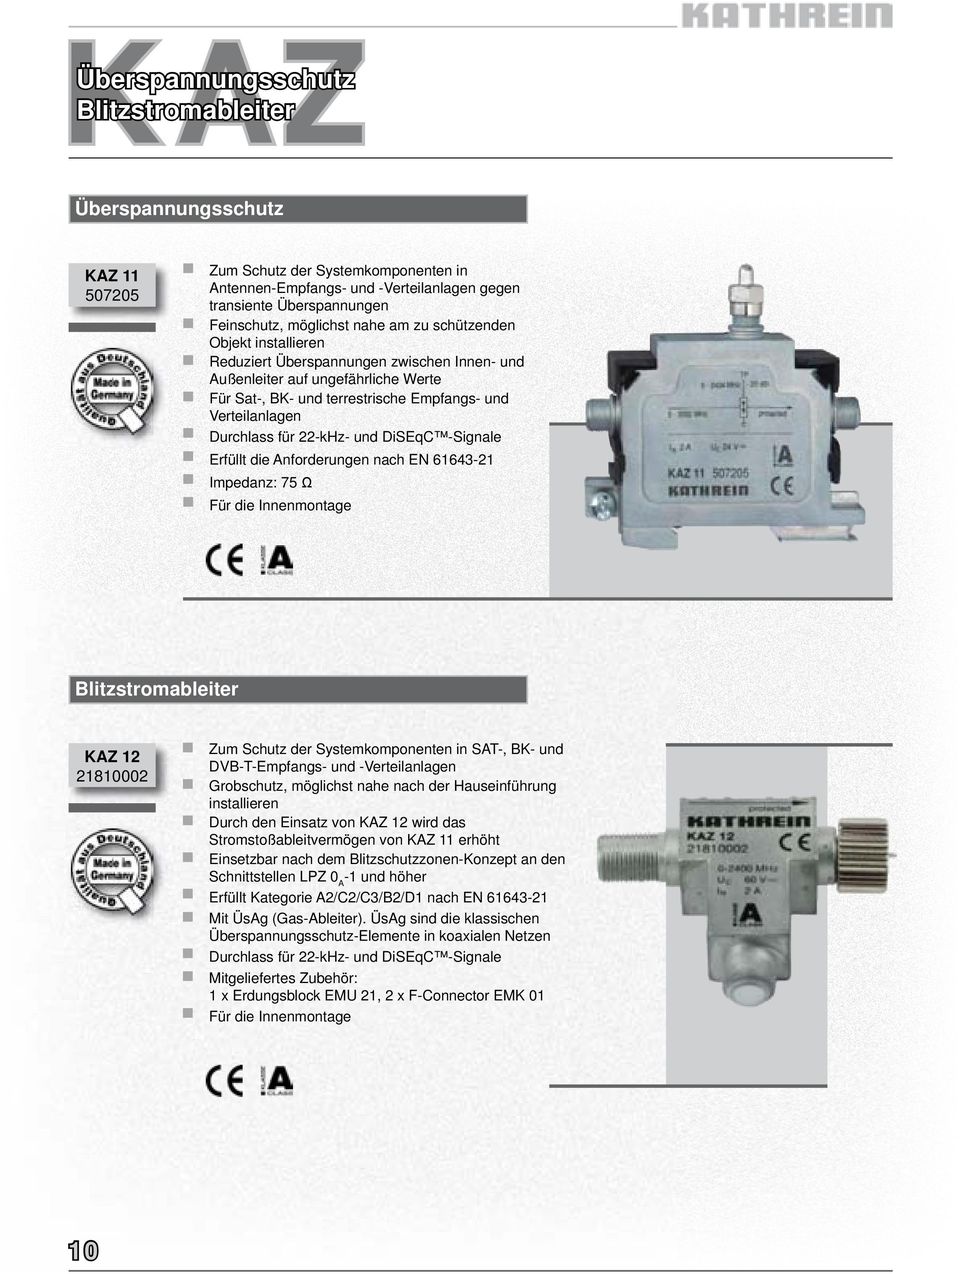 Durchlass für 22-kHz- und DiSEqC -Signale Erfüllt die Anforderungen nach EN 61643-21 Impedanz: 75 Ω Für die Innenmontage Blitzstromableiter KAZ 12 21810002 Zum Schutz der Systemkomponenten in SAT-,